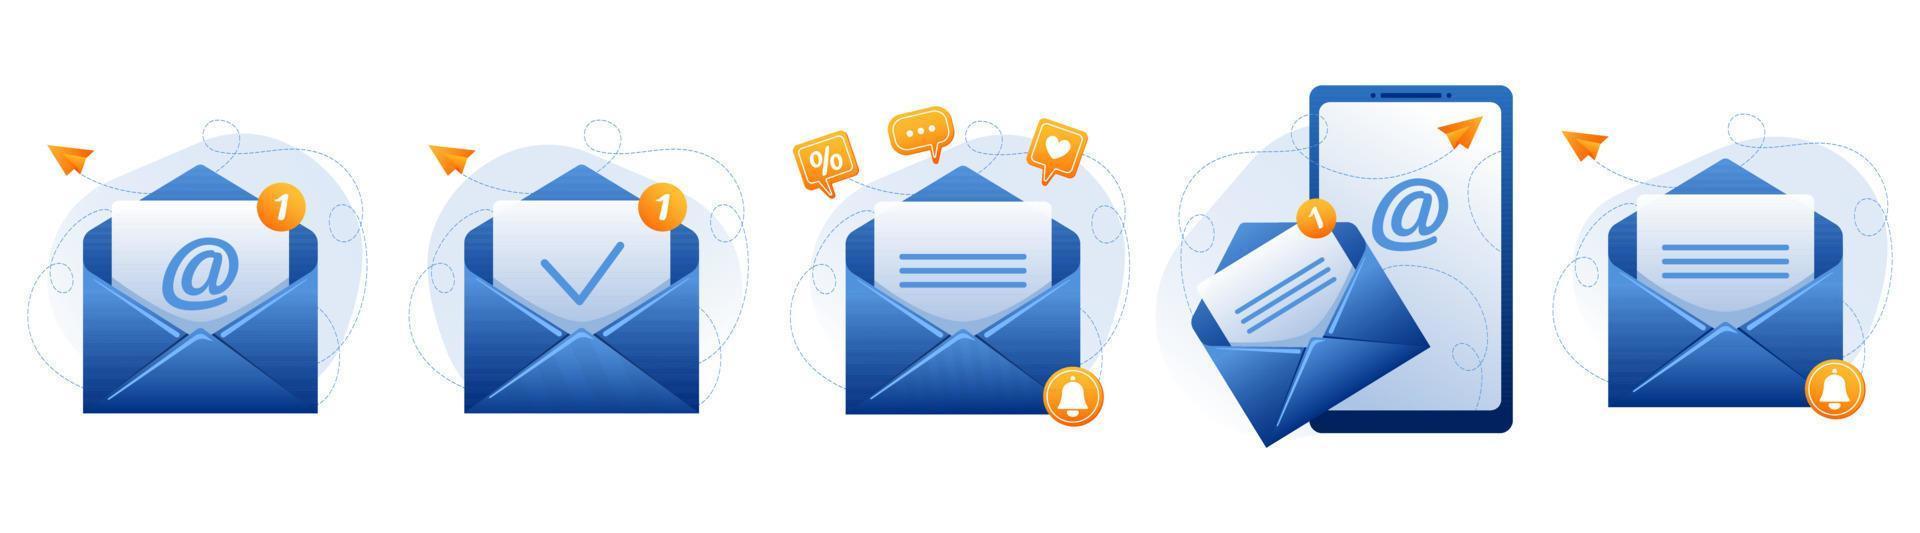 envelopes de correio abertos azuis com sinal de e-mail, nova mensagem, carta, marca de seleção. enviando e-mails publicitários, oferecendo desconto, venda. conceito de gerenciamento de e-mail. conjunto de ícones do vetor. vetor